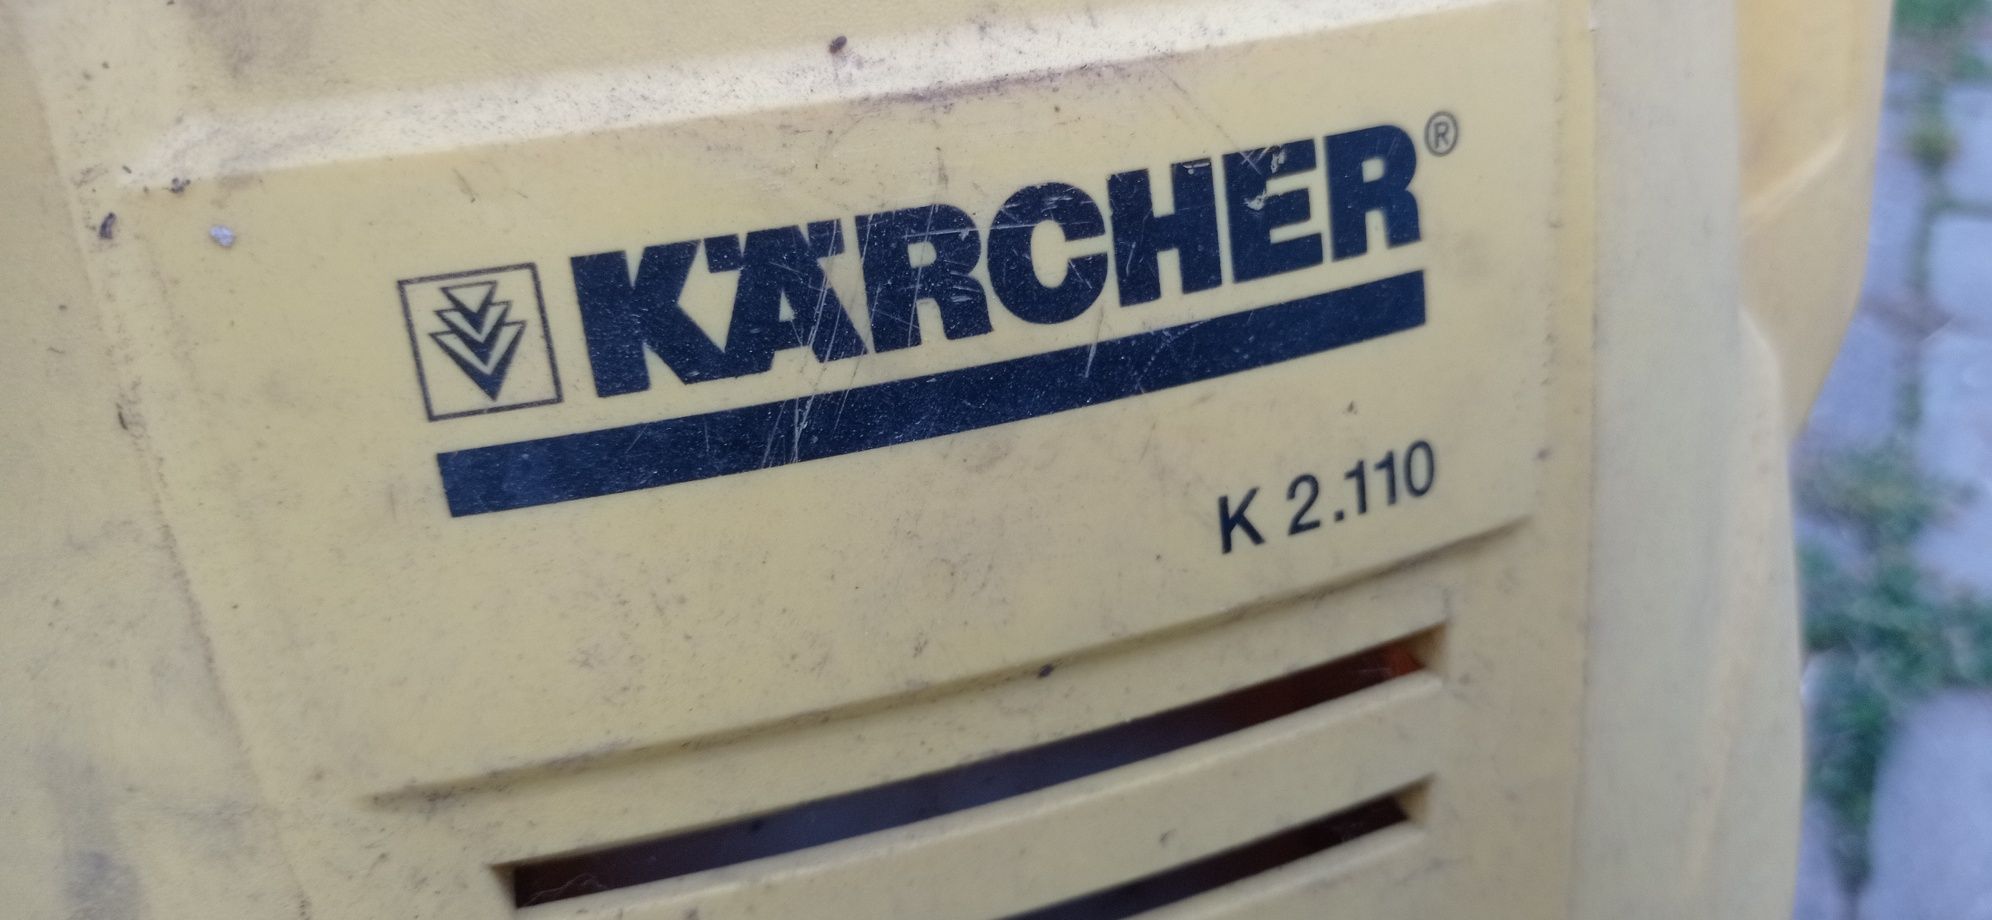 Karcher K2.110 uszkodzony myjka ciśnieniowa